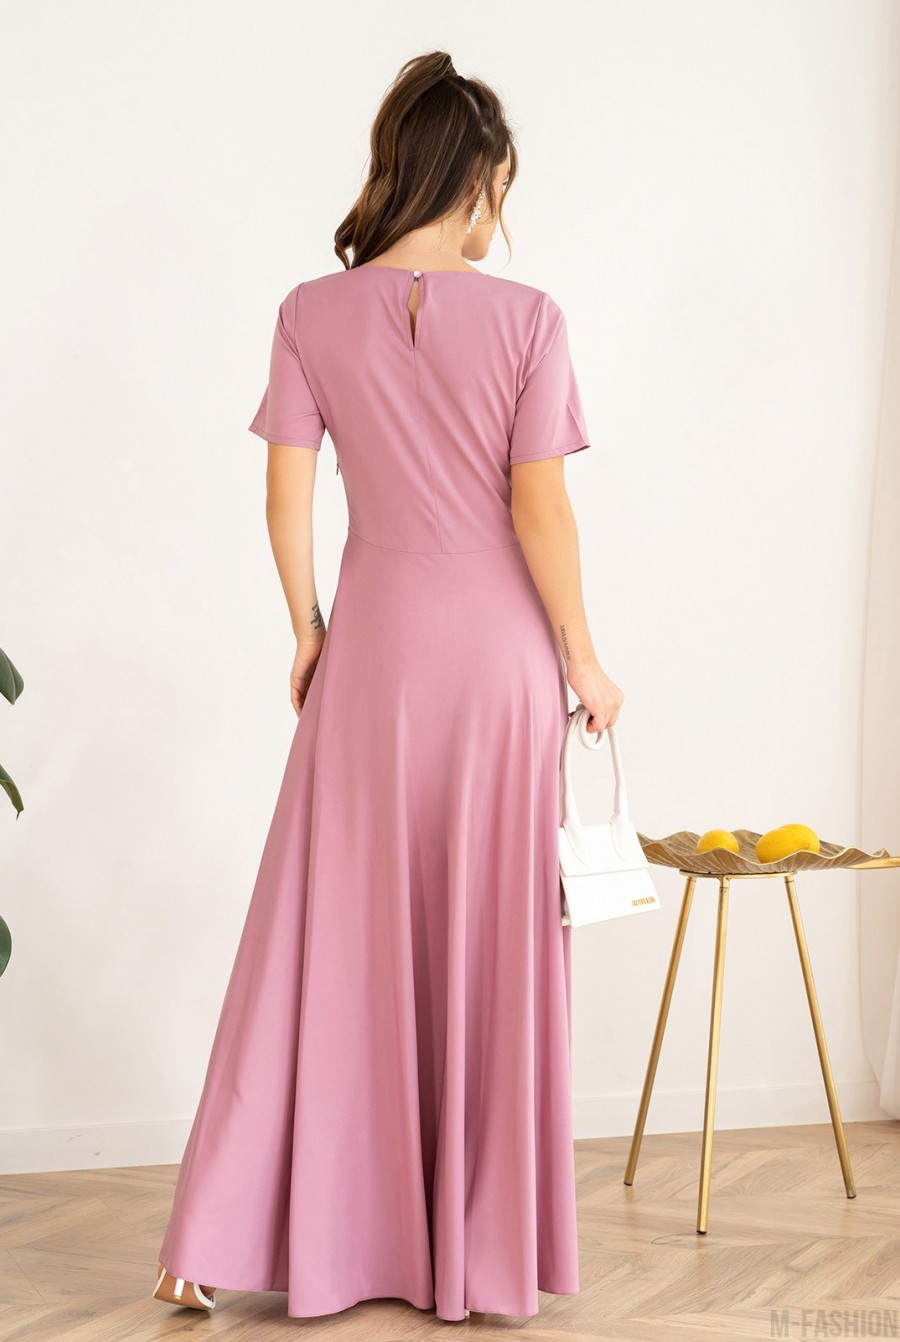 Сиреневое классическое платье с короткими рукавами - Фото 3